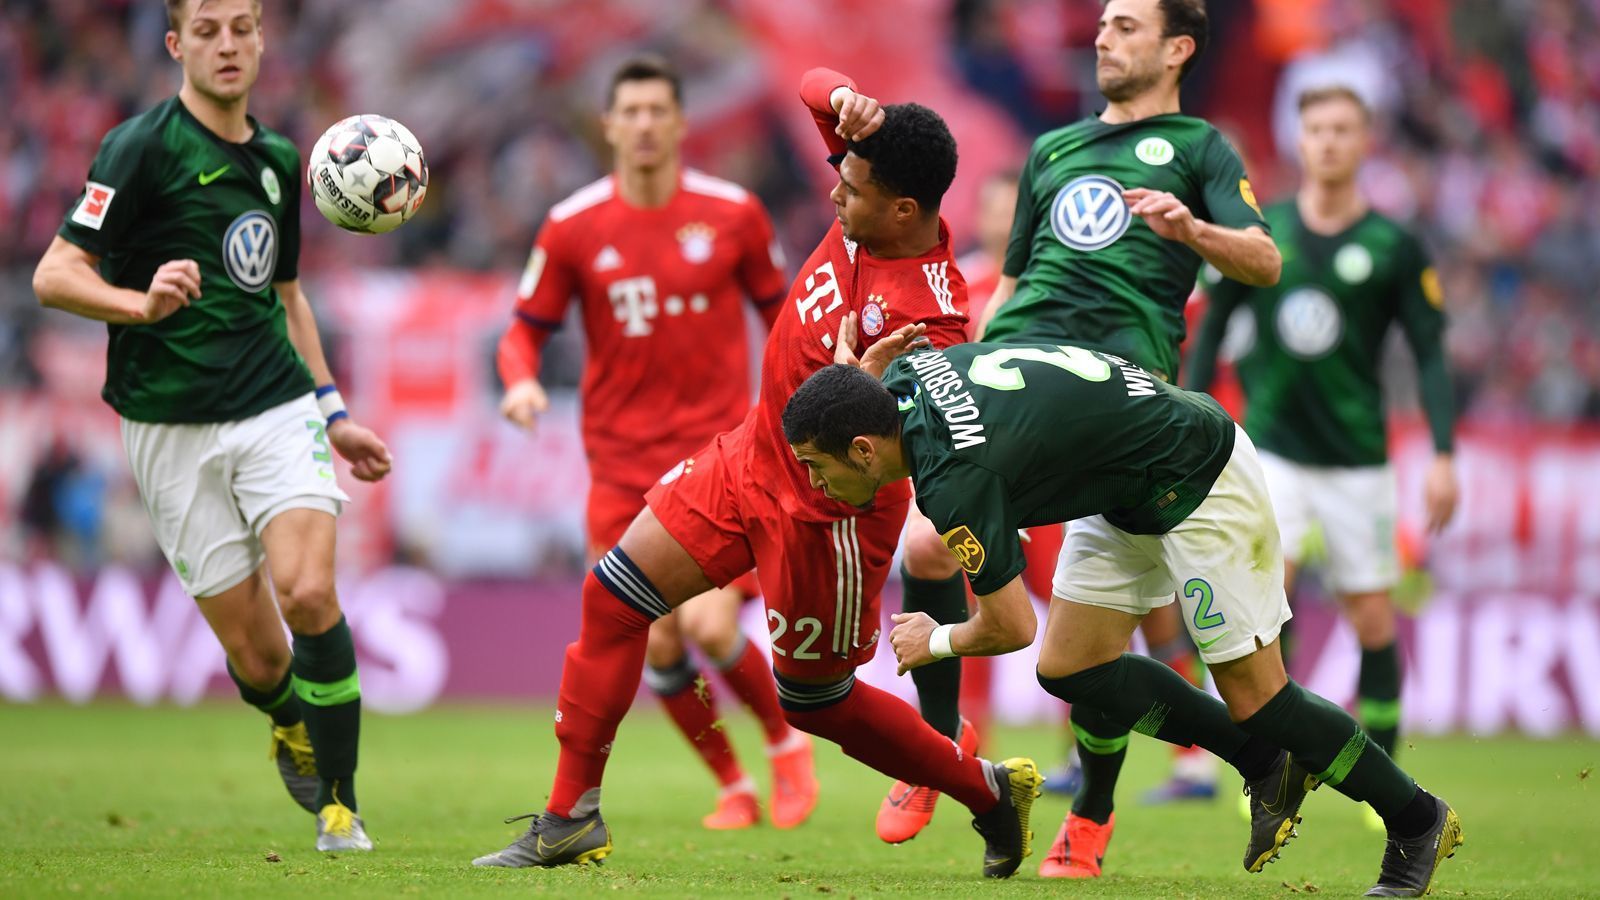 
                <strong>17. Spieltag</strong><br>
                Zum Jahresausklang und Ende der Bundesliga-Hinrunde empfängt Bayern München den VfL Wolfsburg und parallel muss Borussia Dortmund auswärts bei Hoffenheim antreten, um möglicherweise die letzten zu vergebenden Punkte im Jahr 2019 einzufahren. 
              